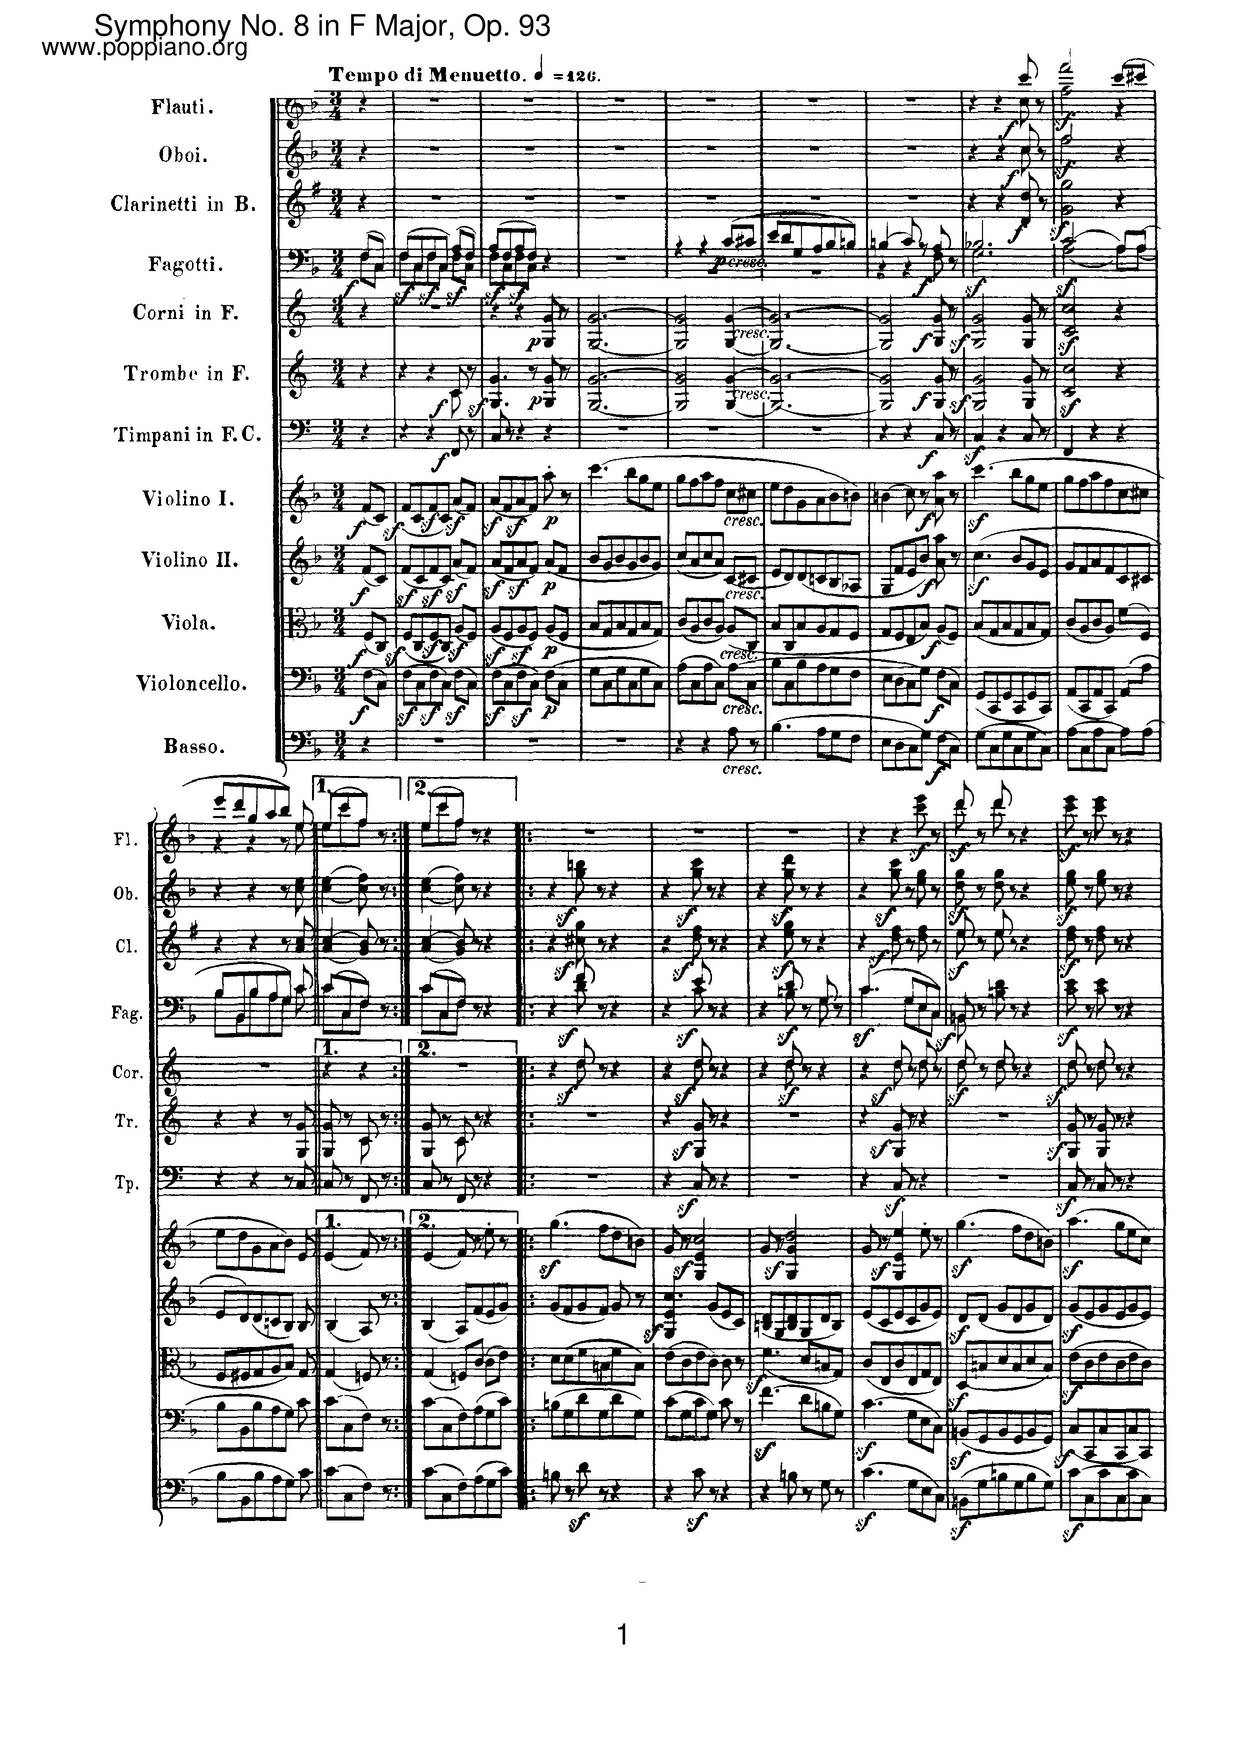 Symphony No. 8 In F Major, Op. 93 Score